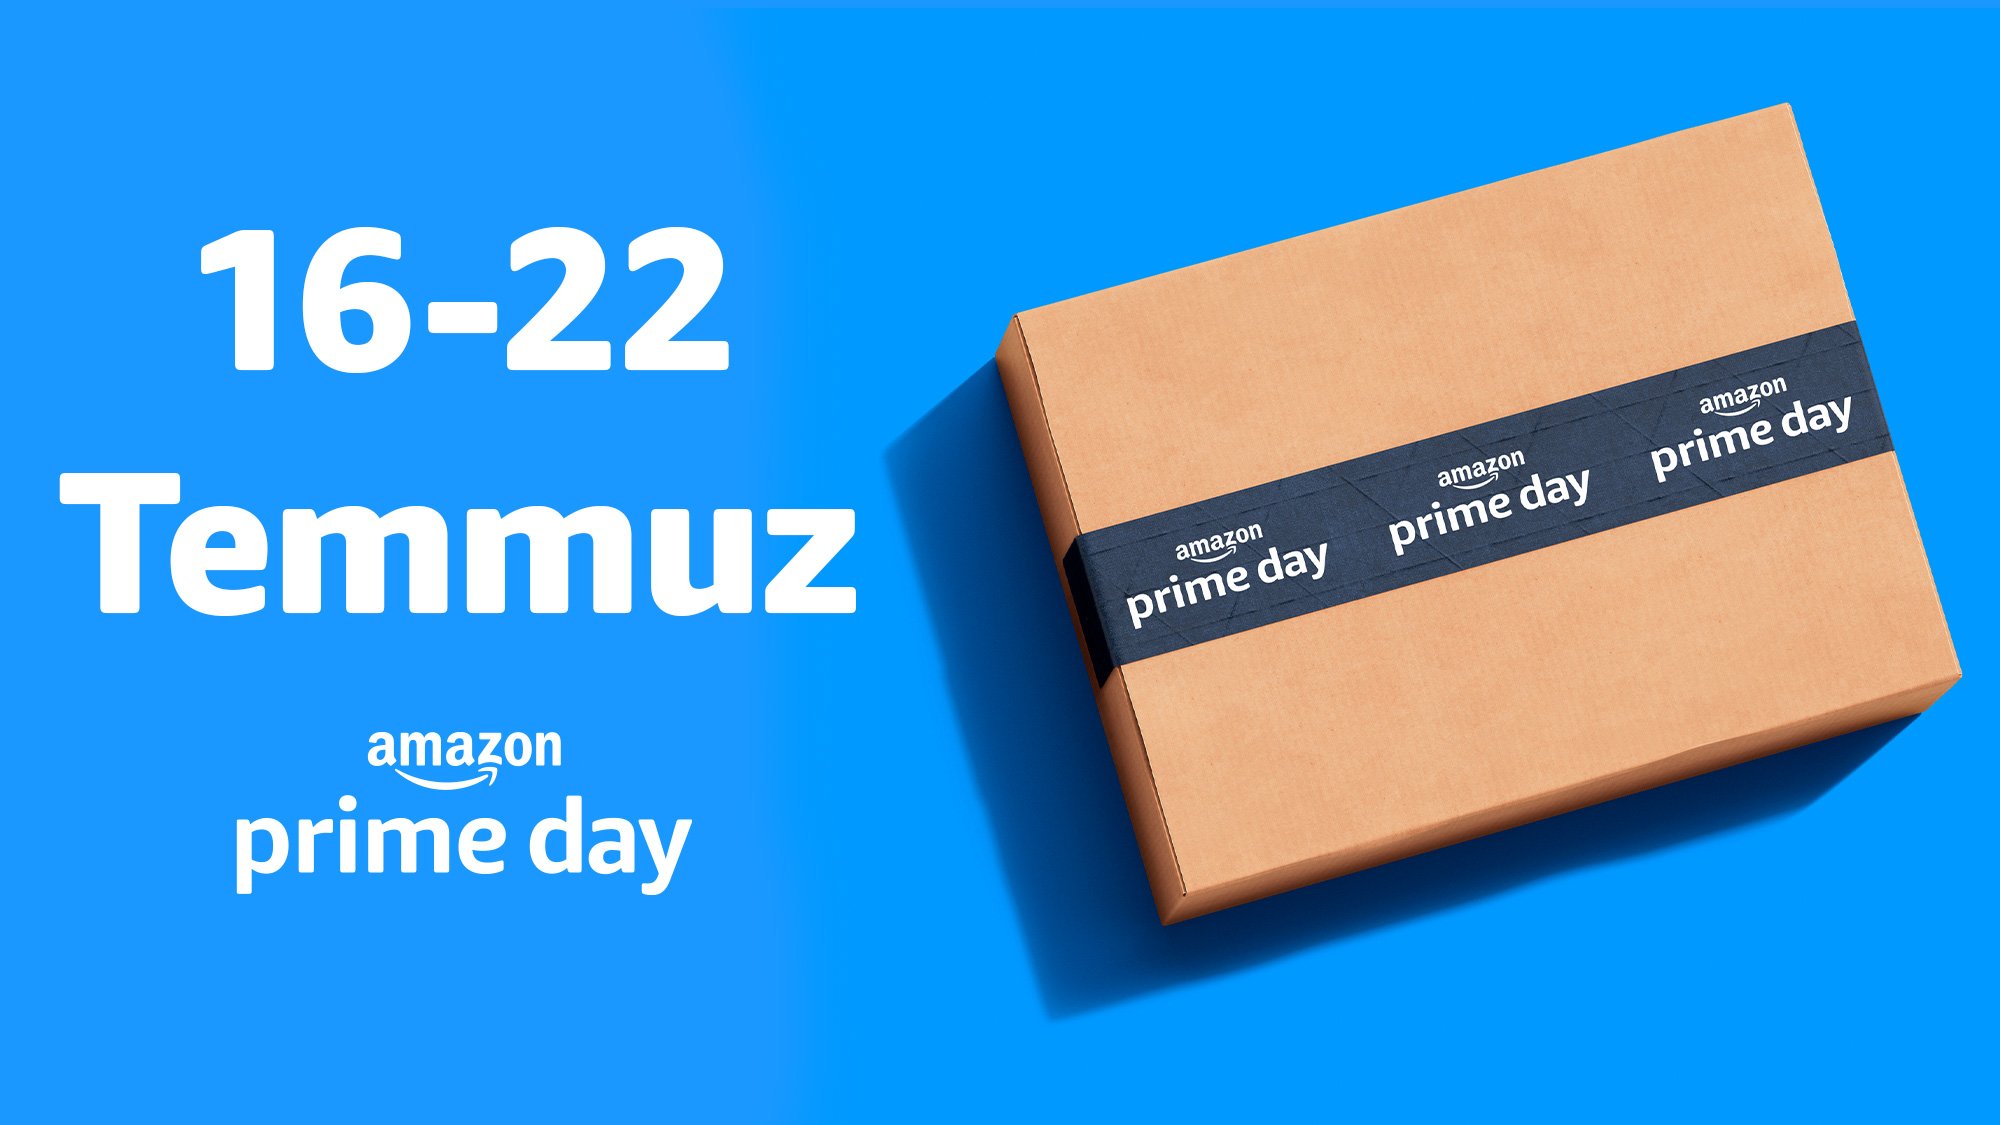 Amazon Prime Day 16 – 22 Temmuz Tarihleri Arasında Düzenlenecek